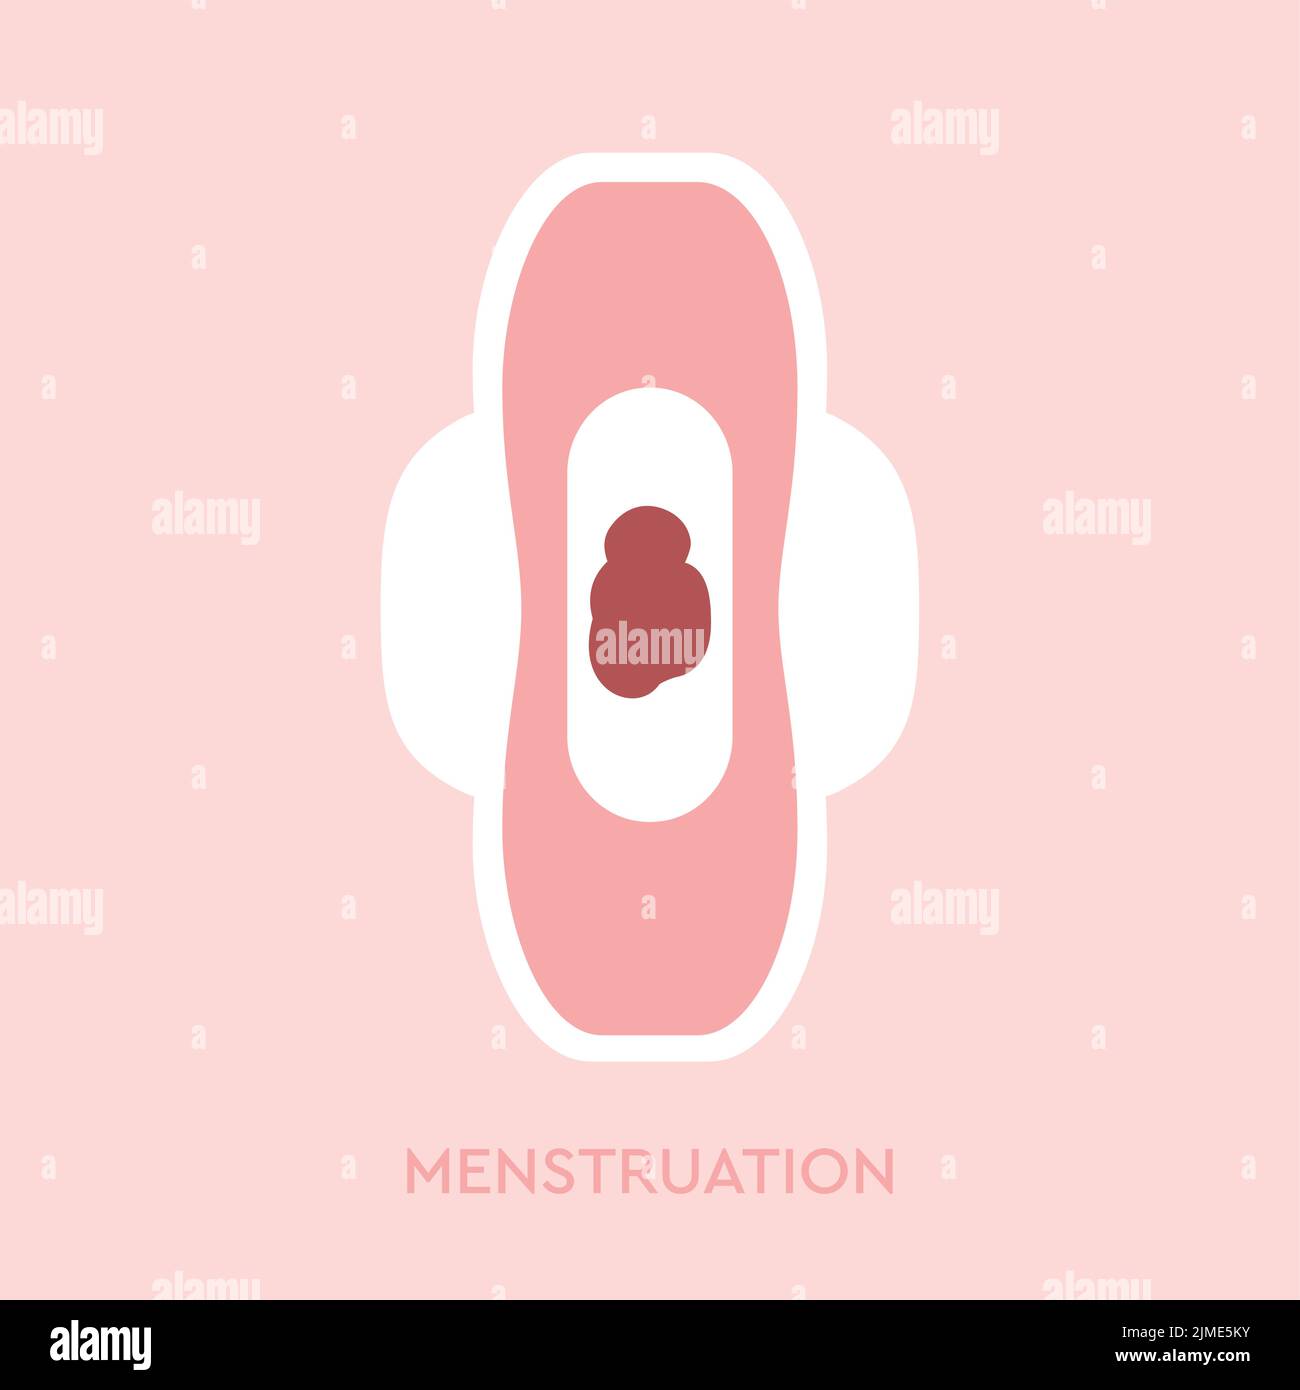 Menstruationshygiene Serviette weibliche Hygiene Grafik isoliert Stock Vektor